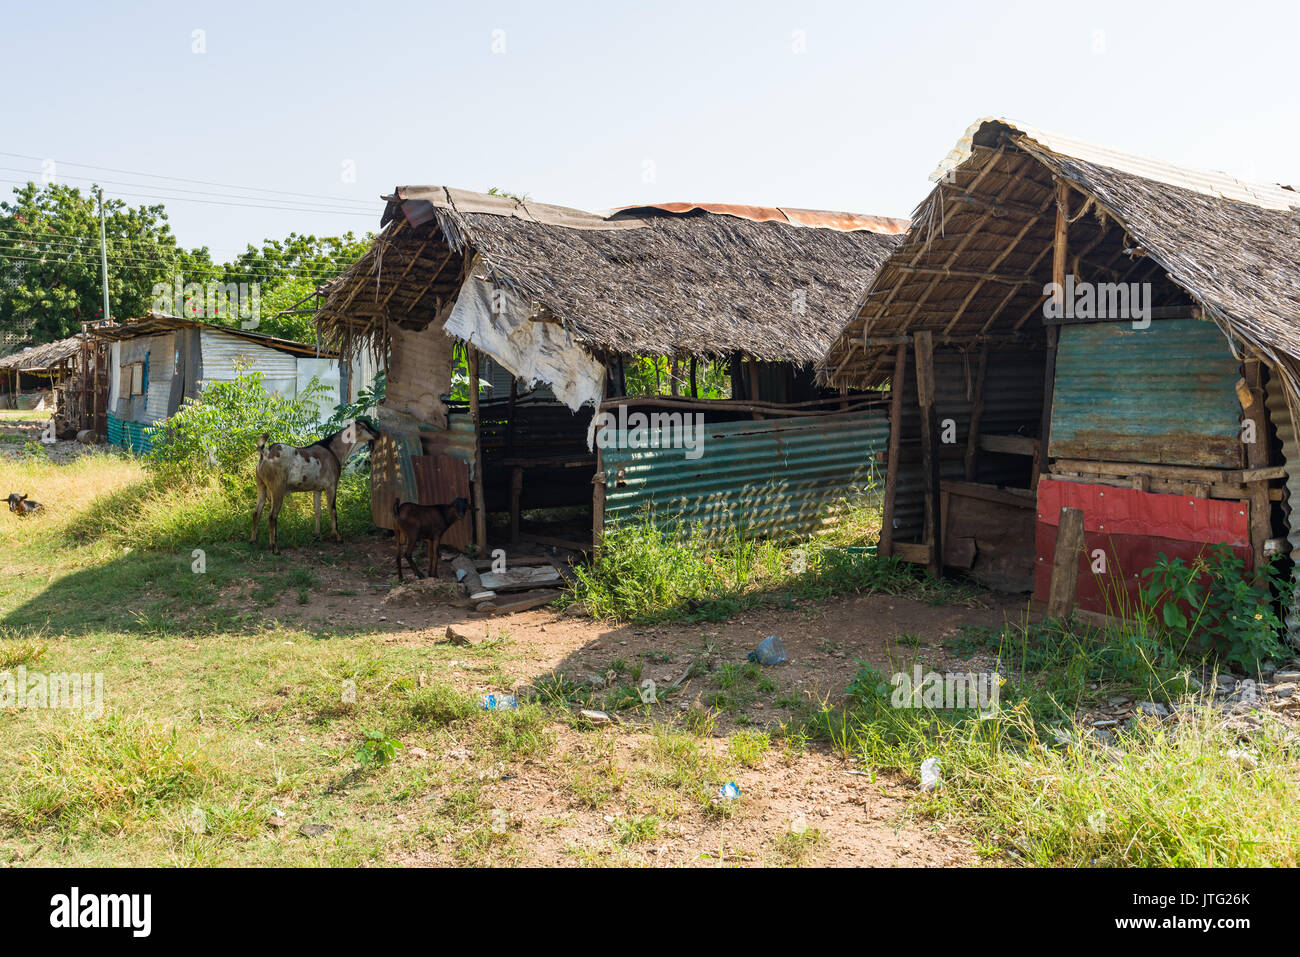 La tôle ondulée et les cabanes à toit de chaume de palmier, au Kenya Banque D'Images